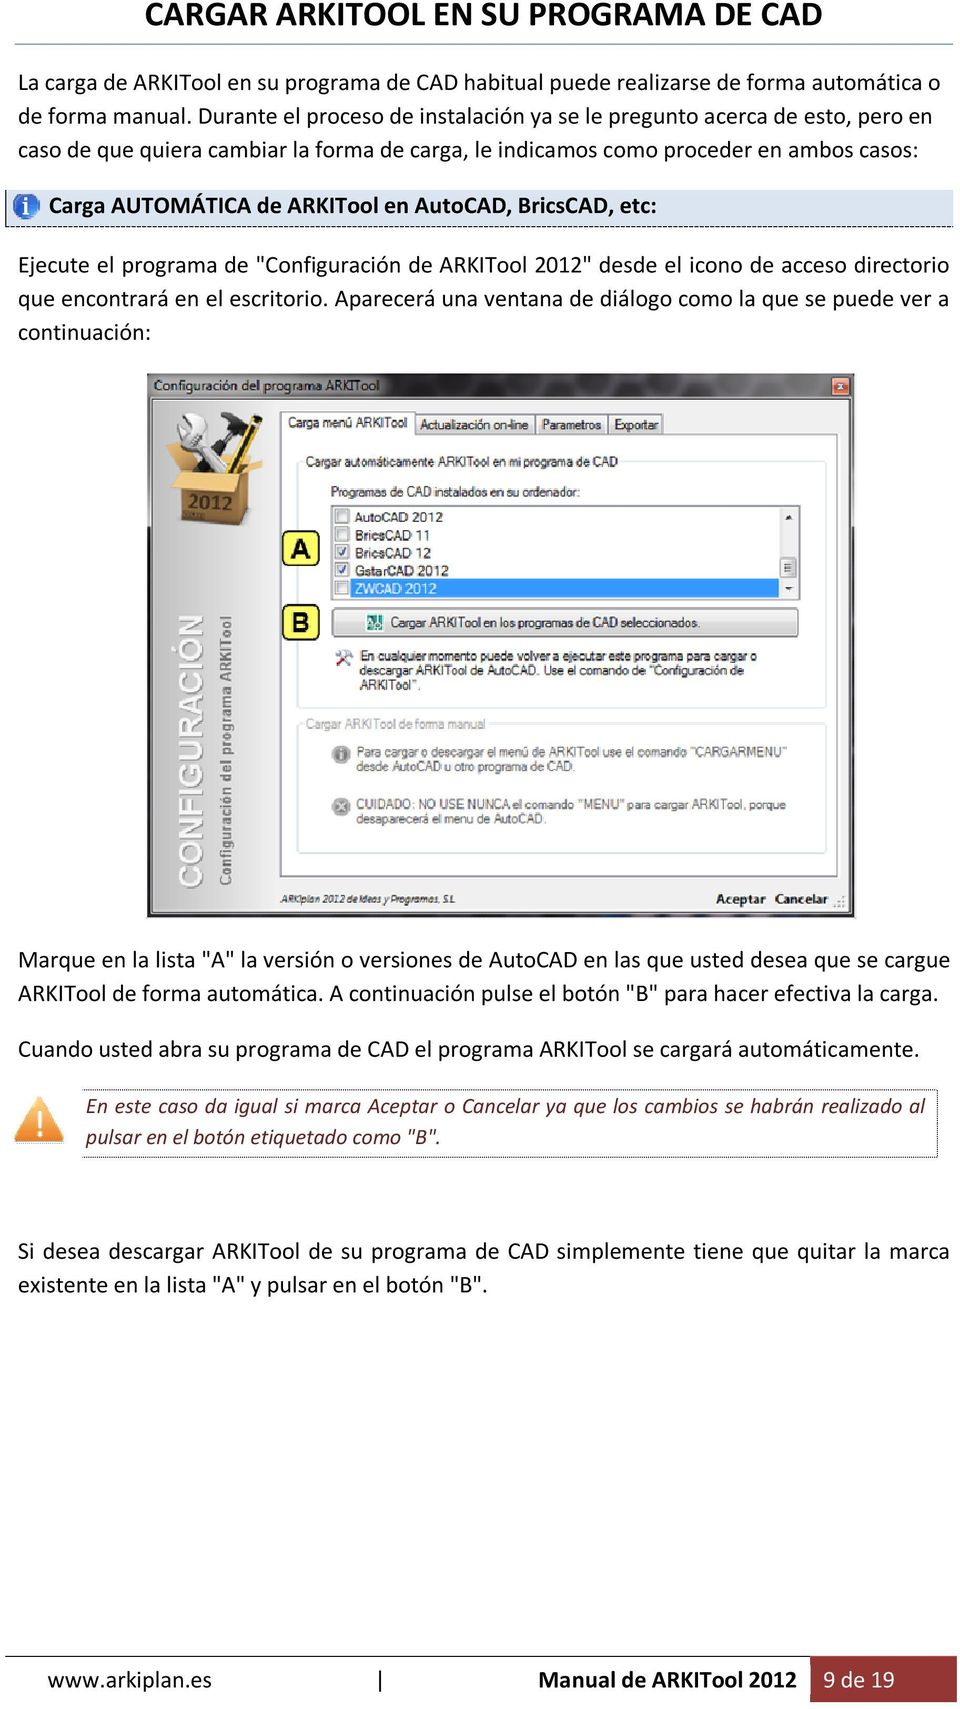 AutoCAD, BricsCAD, etc: Ejecute el programa de "Configuración de ARKITool 2012" desde el icono de acceso directorio que encontrará en el escritorio.